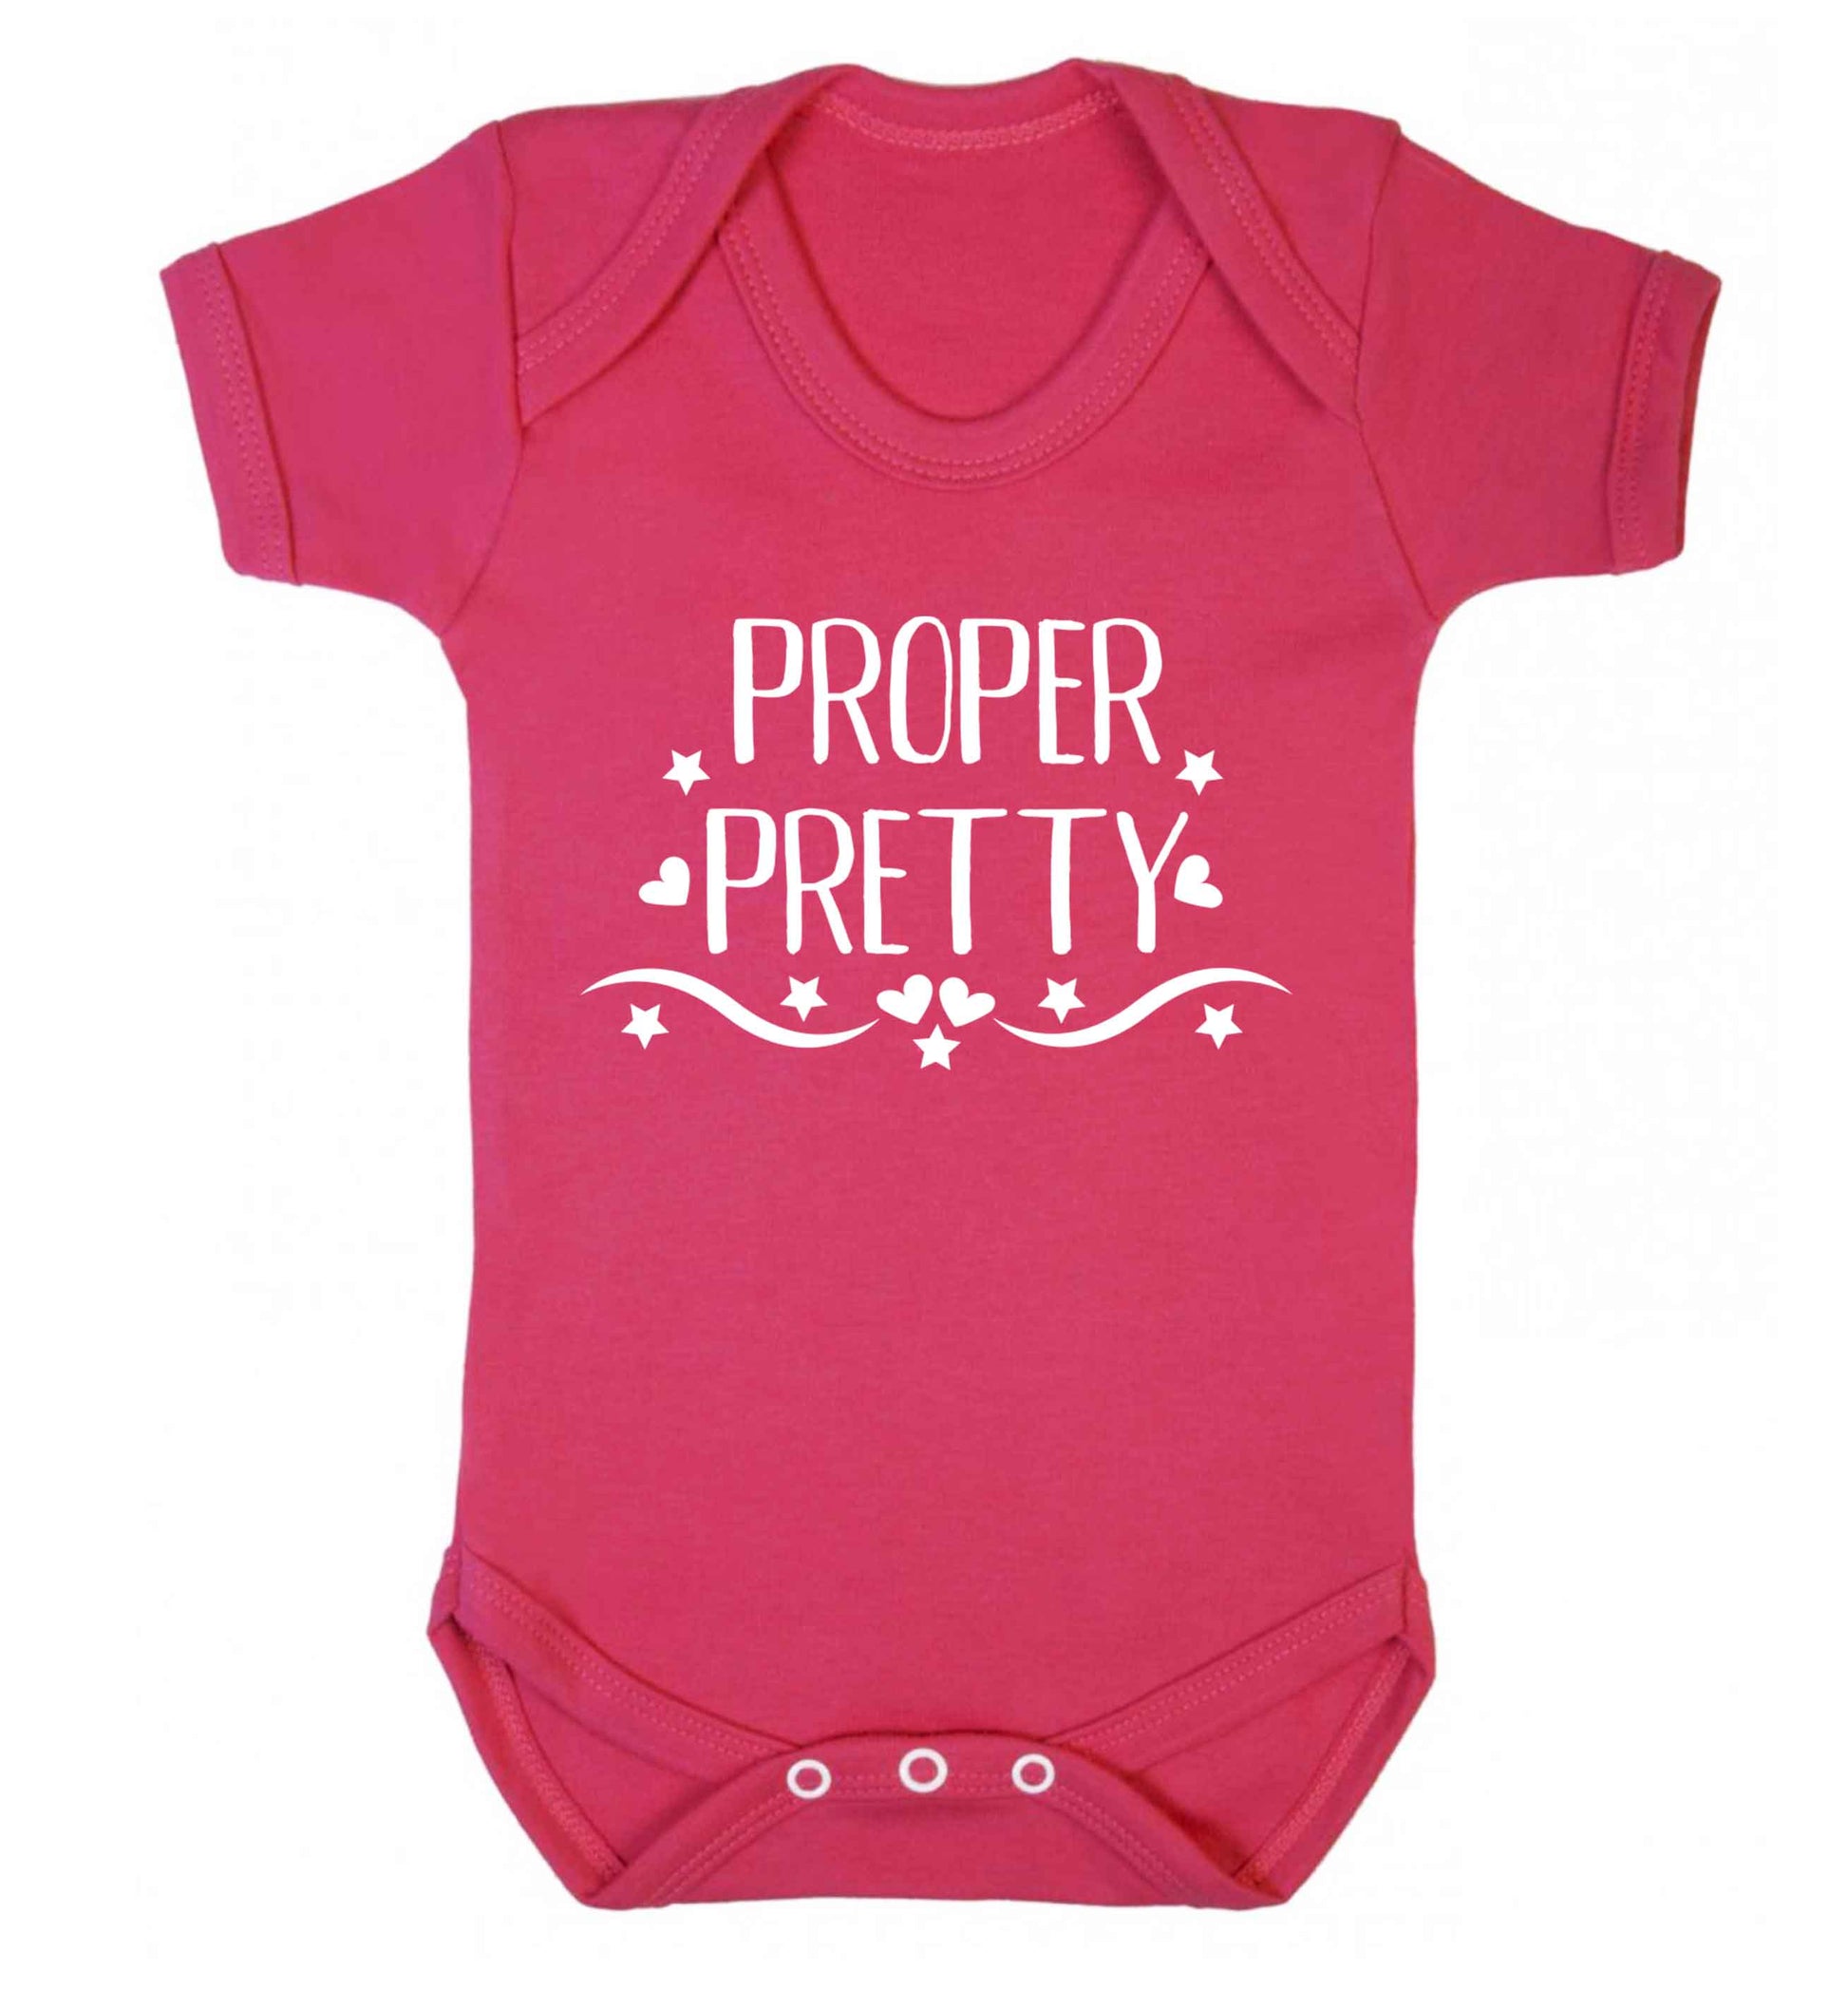 Proper pretty Baby Vest dark pink 18-24 months